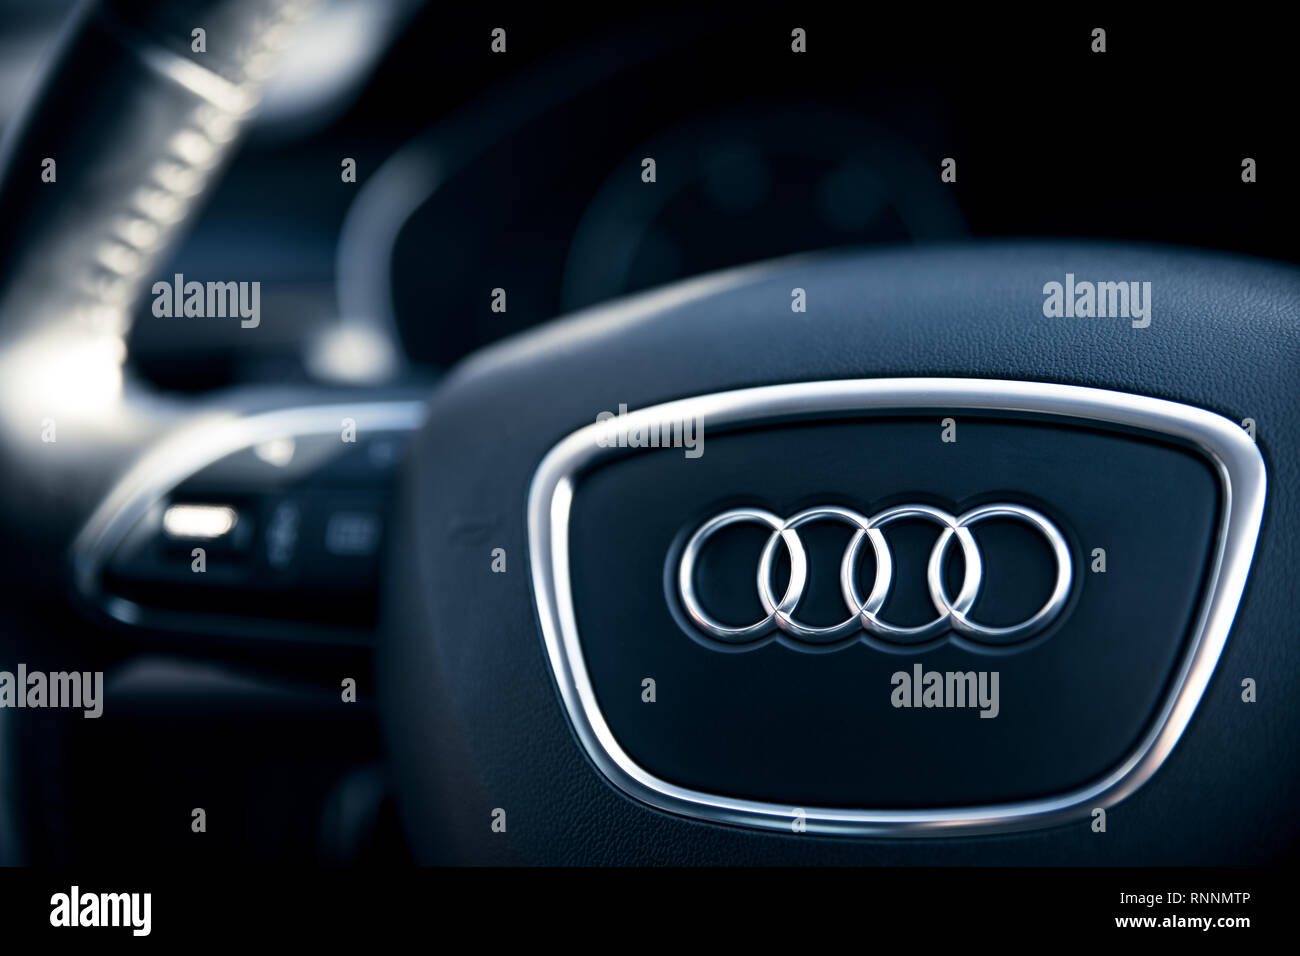 Intérieur d'une Audi A6 voiture avec bord et volant, voiture moderne détails de l'intérieur. 15 Février, 2019 St Neots, UK. Banque D'Images